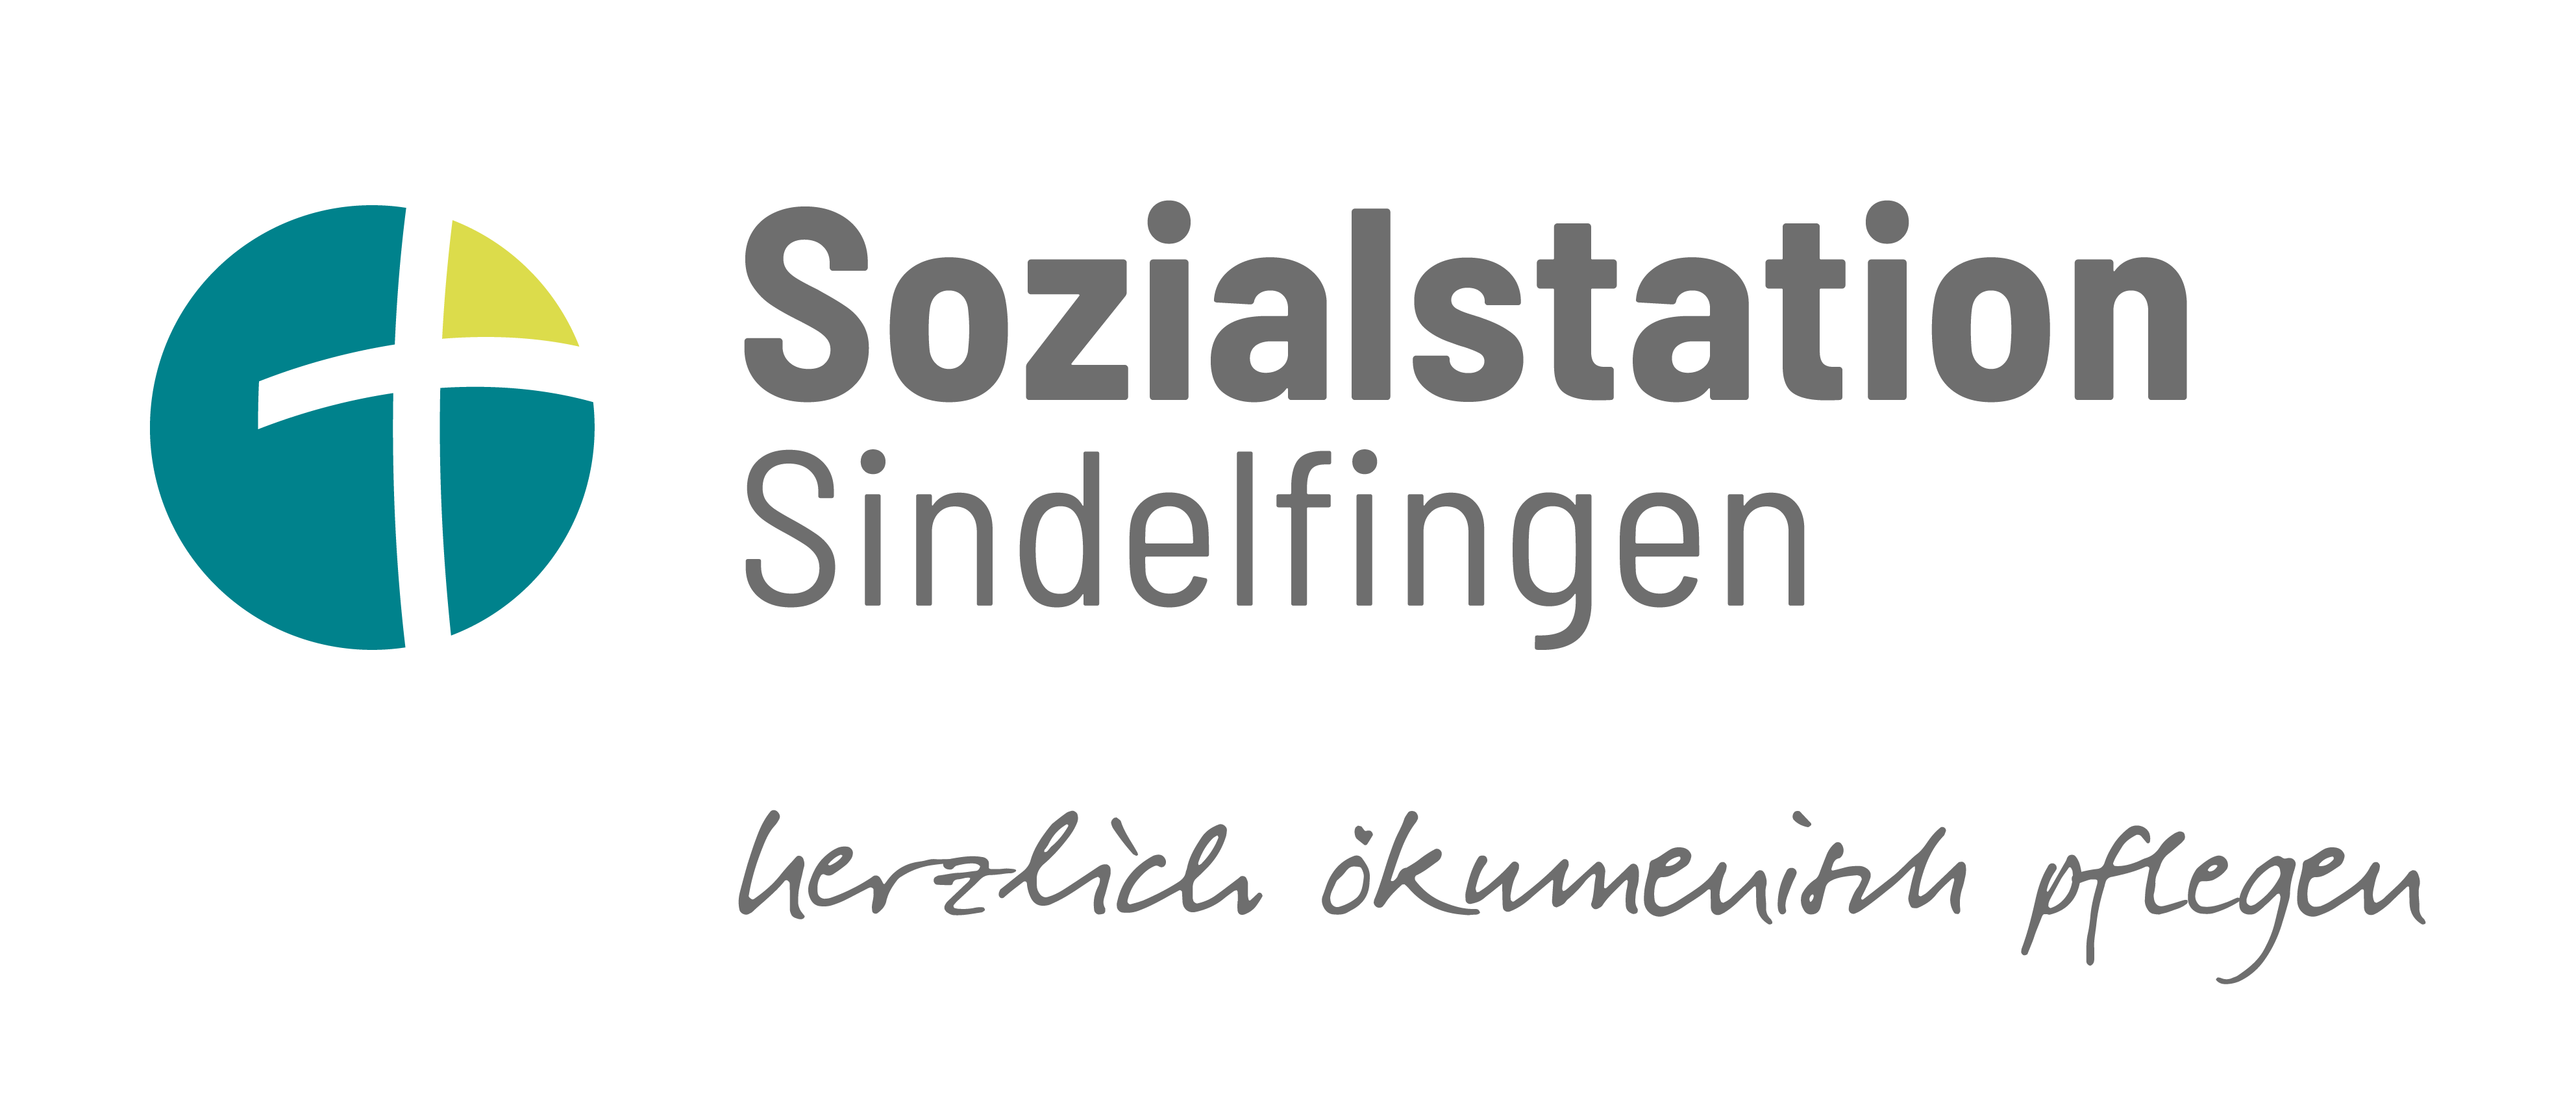 Sozialstation_Sindelfingen_Logo_Farbe_Web